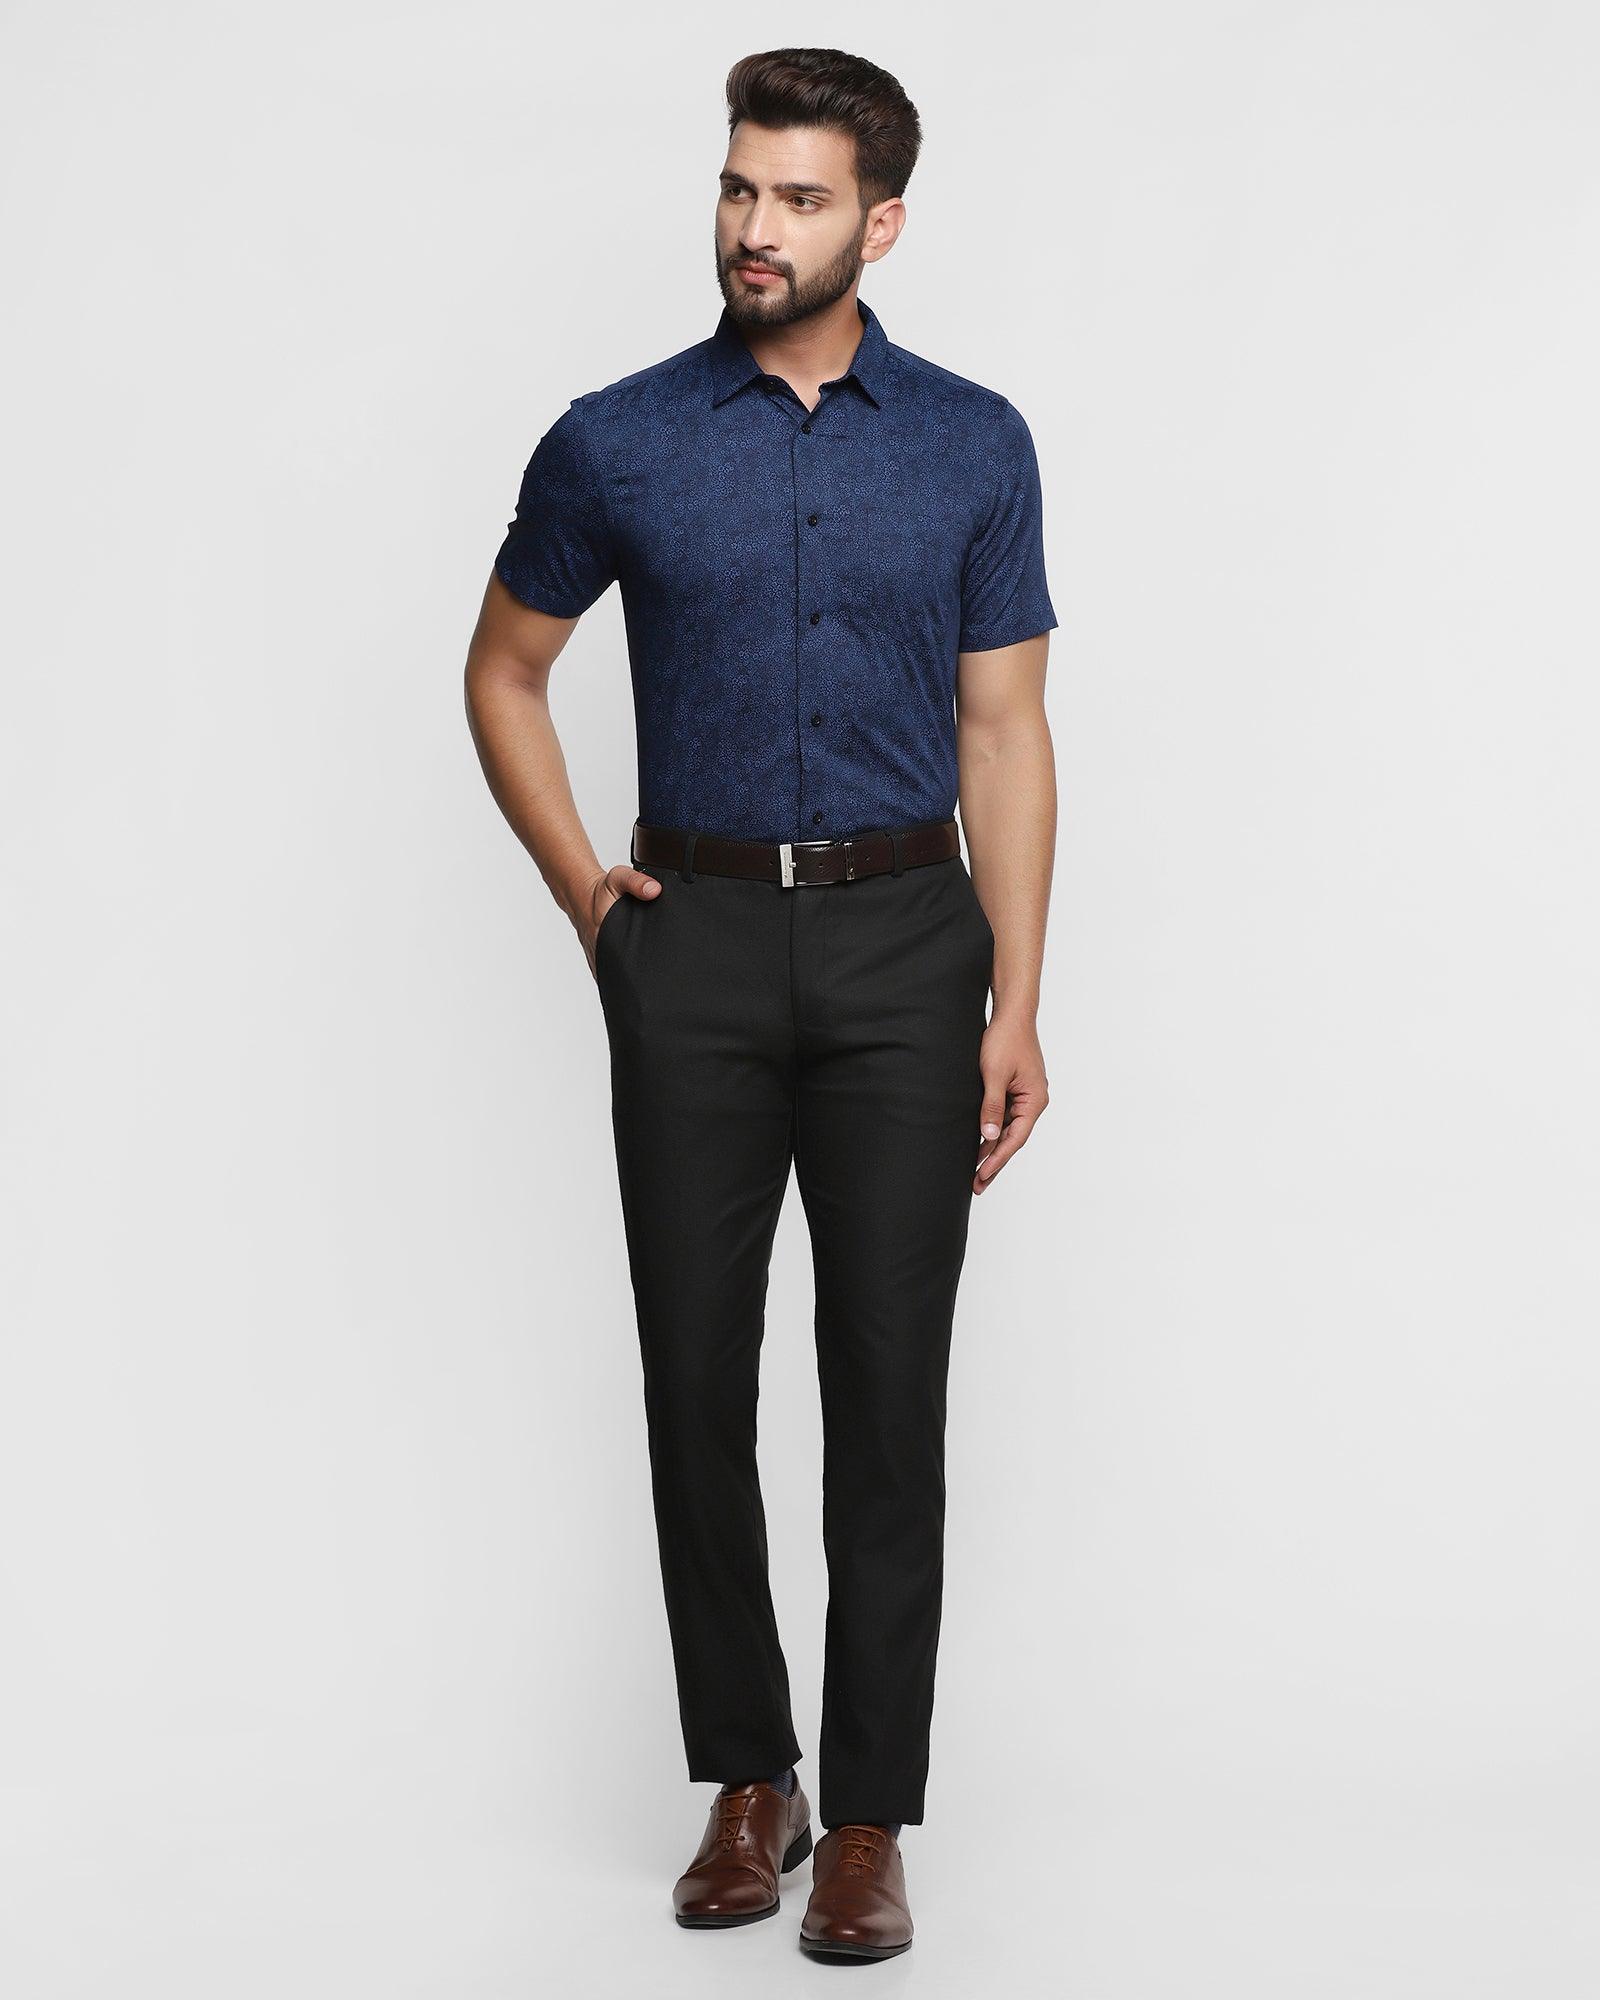 Blue shirt black pant combination outfit men | Blue shirt black pants, Black  shirt, Black pants